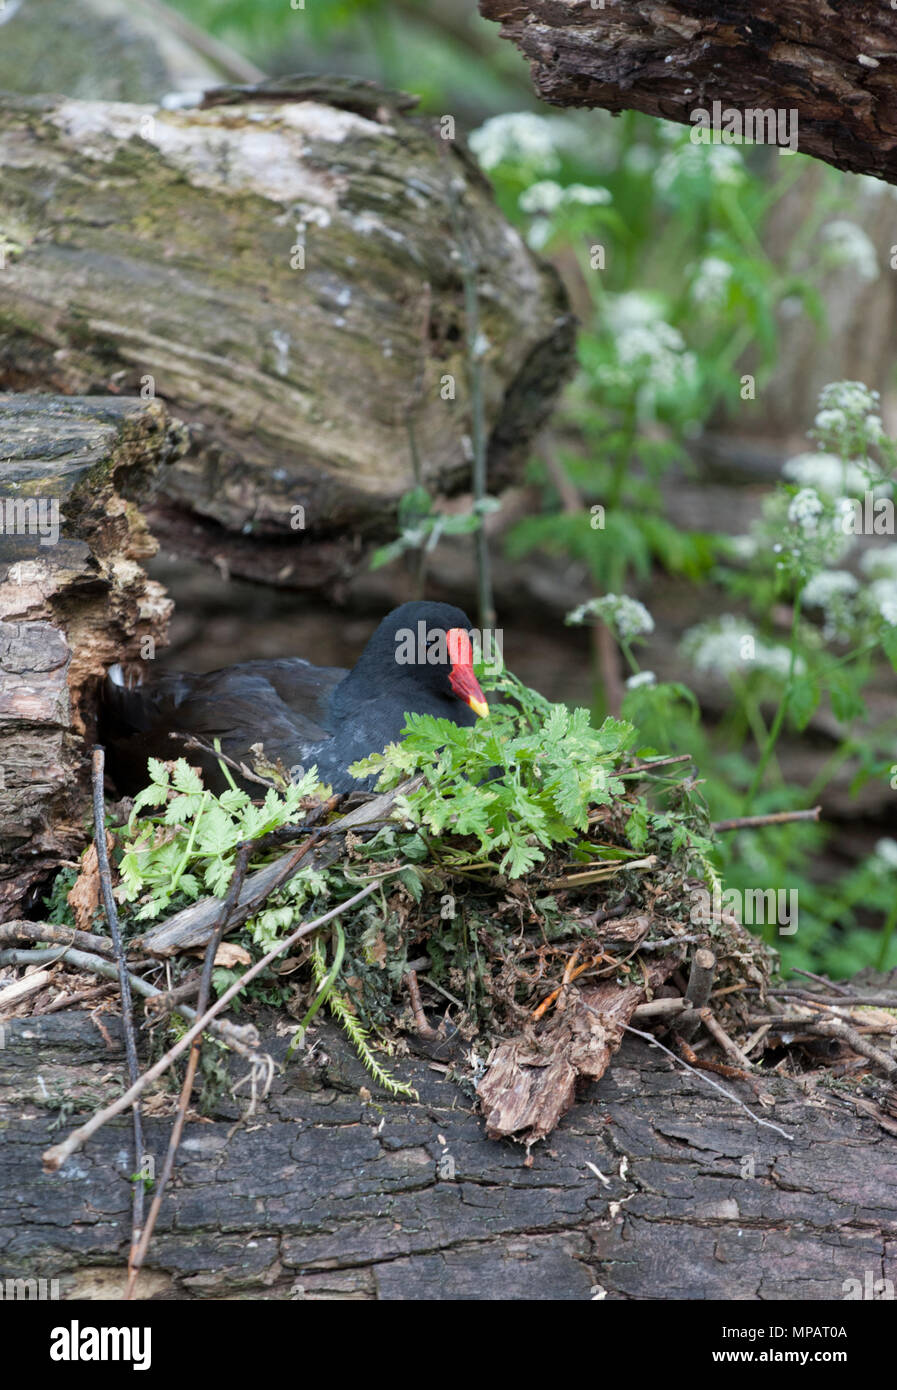 Il nesting Moorhen comune,(Gallinula chloropus), noto anche come il waterhen o la palude di pollo, Regents Canal, Londra, Regno Unito, Isole britanniche Foto Stock